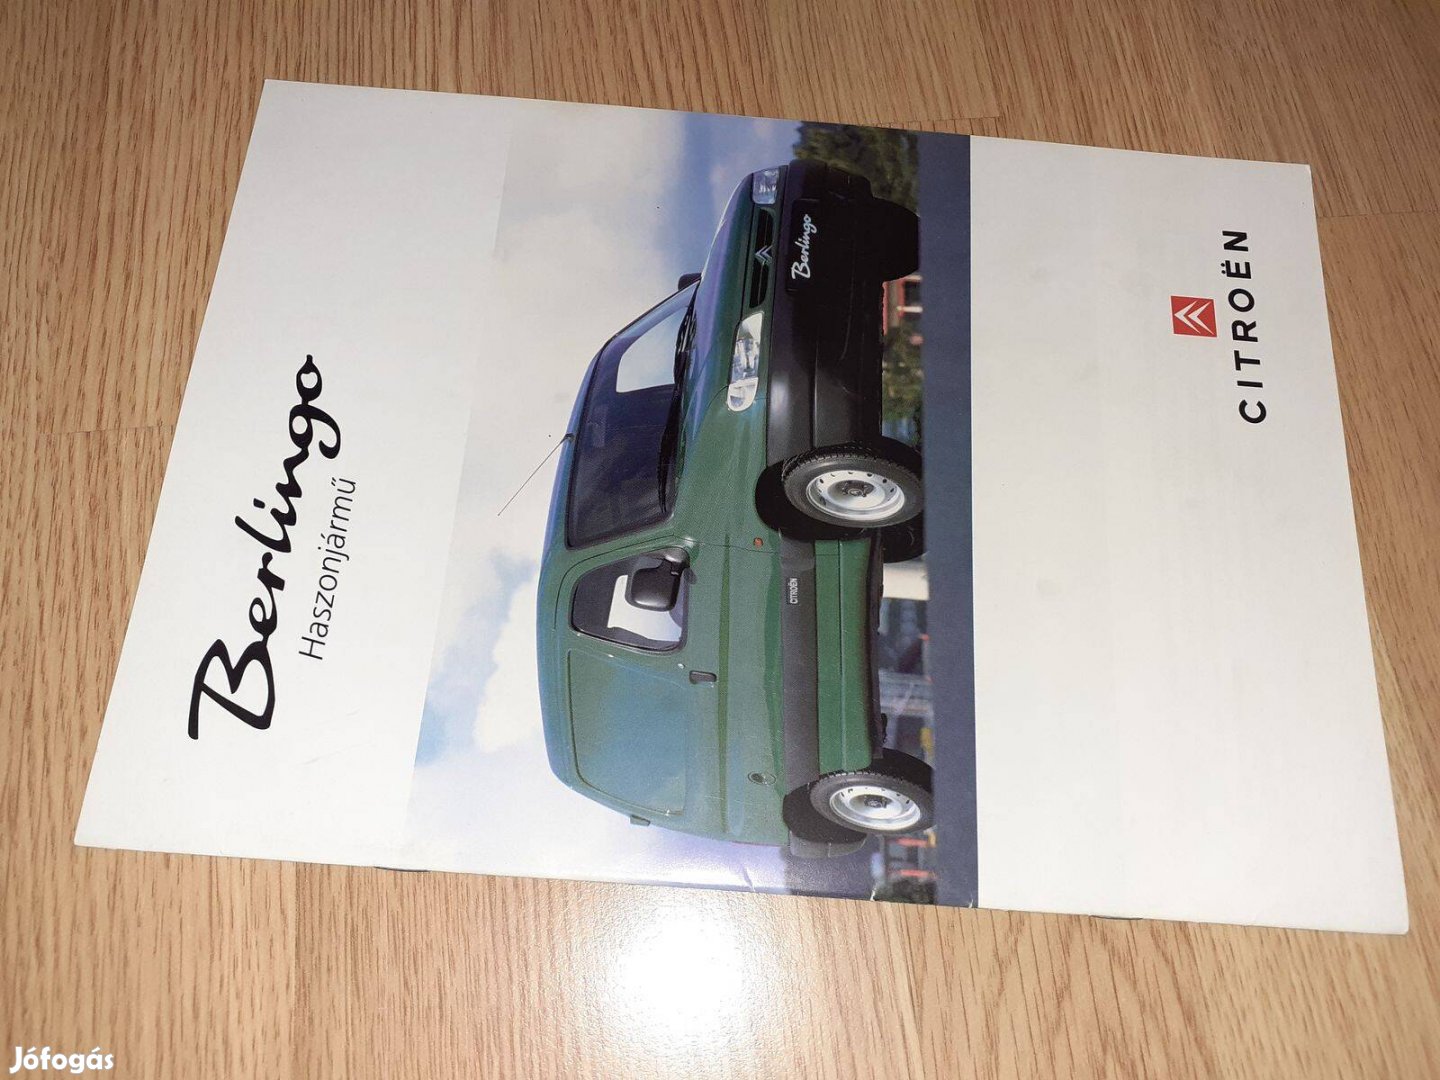 Citroen Berlingo (1996-2002, tehergépkocsi) prospektus - magyar nyelvű